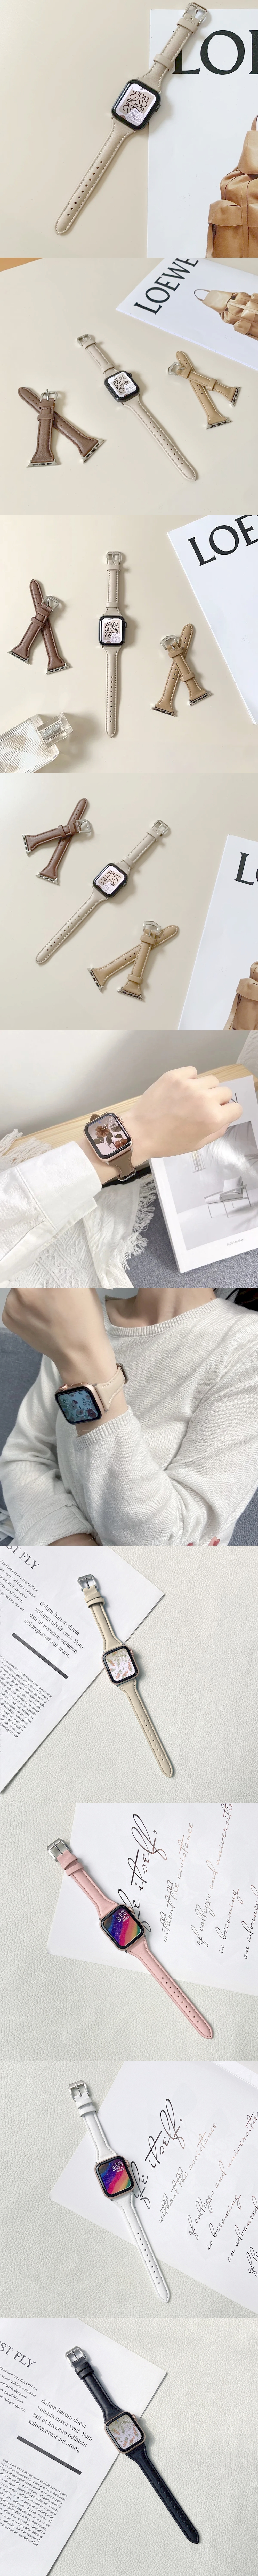 860-Watch-頭層牛皮真皮錶帶T型縫邊皮革細錶帶